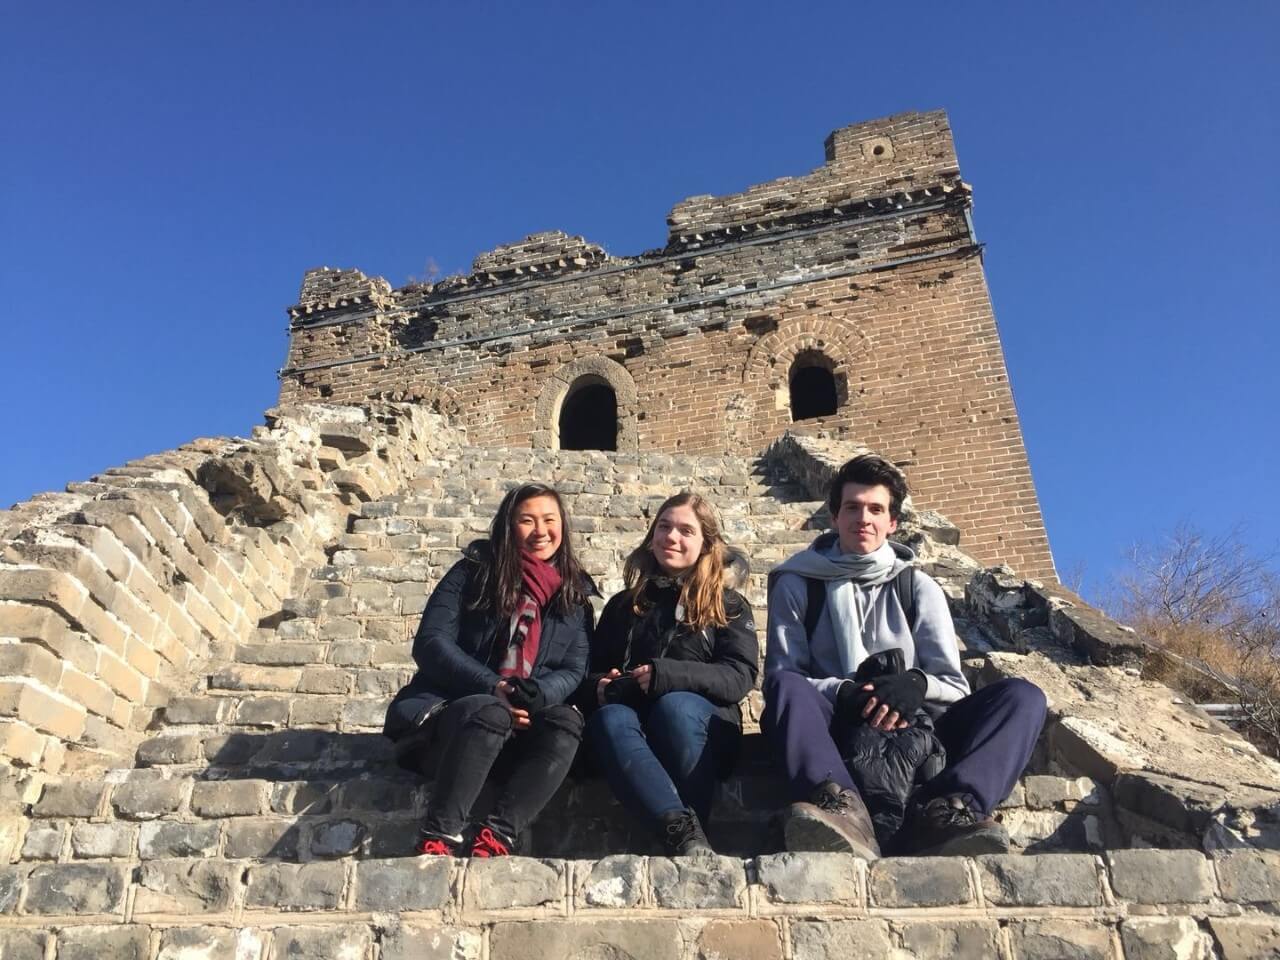 Jocelyn, Katrin and Nicolas at The Great Wall of China